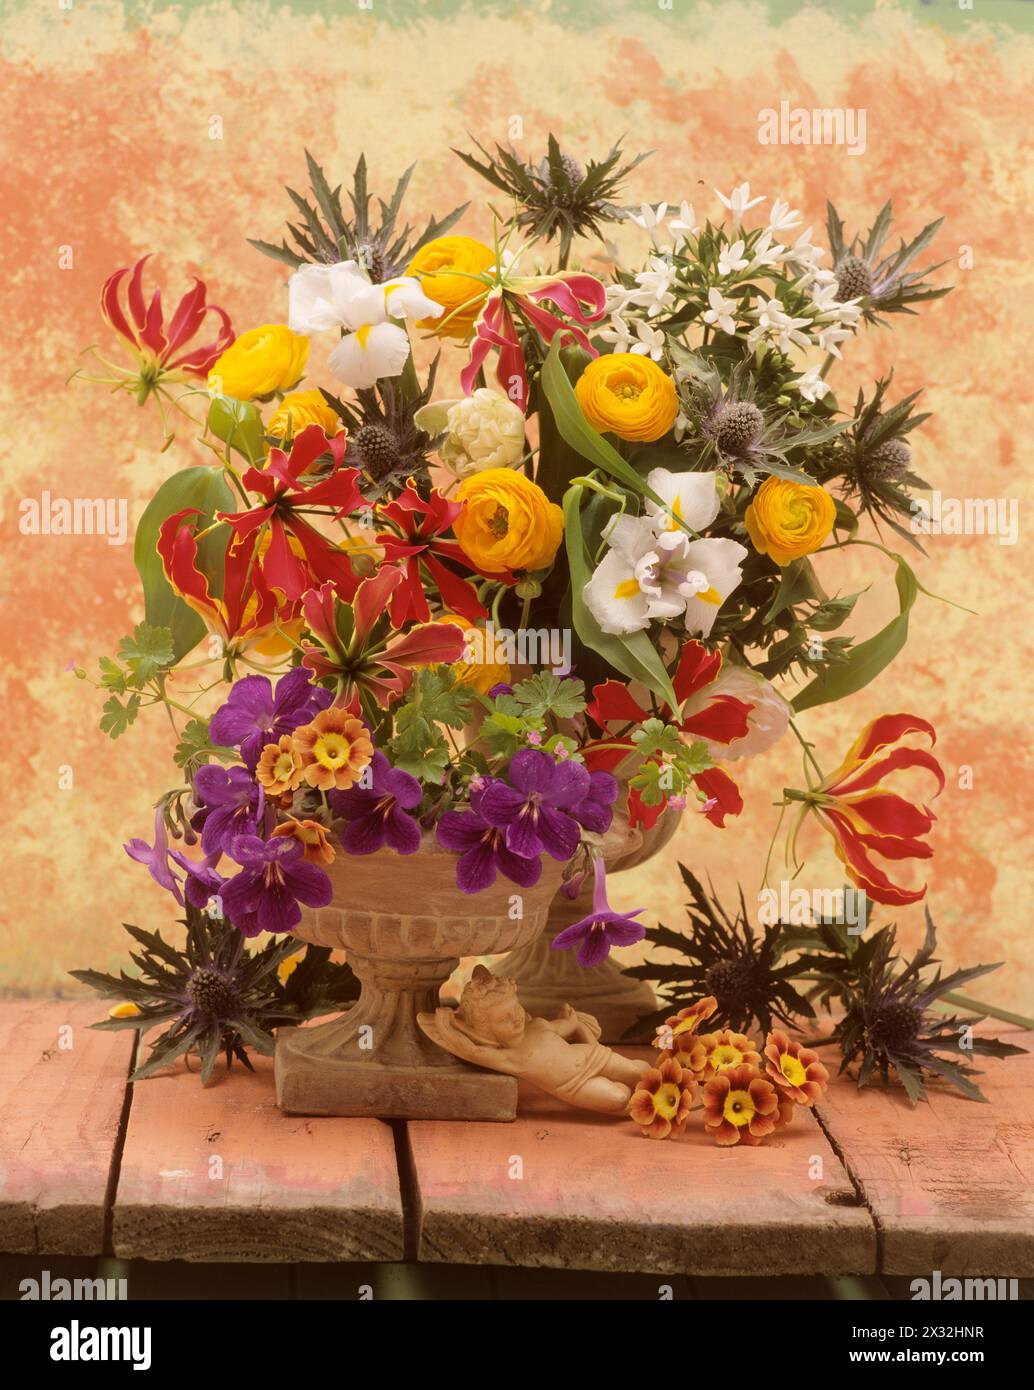 Botanik, Blumen in Urnen auf einem Holztisch mit gemaltem Hintergrund. ranunkulus, primuale Auricula, ADDITIONAL-RIGHTS-CLEARANCE-INFO-NOT-AVAILABLE Stockfoto